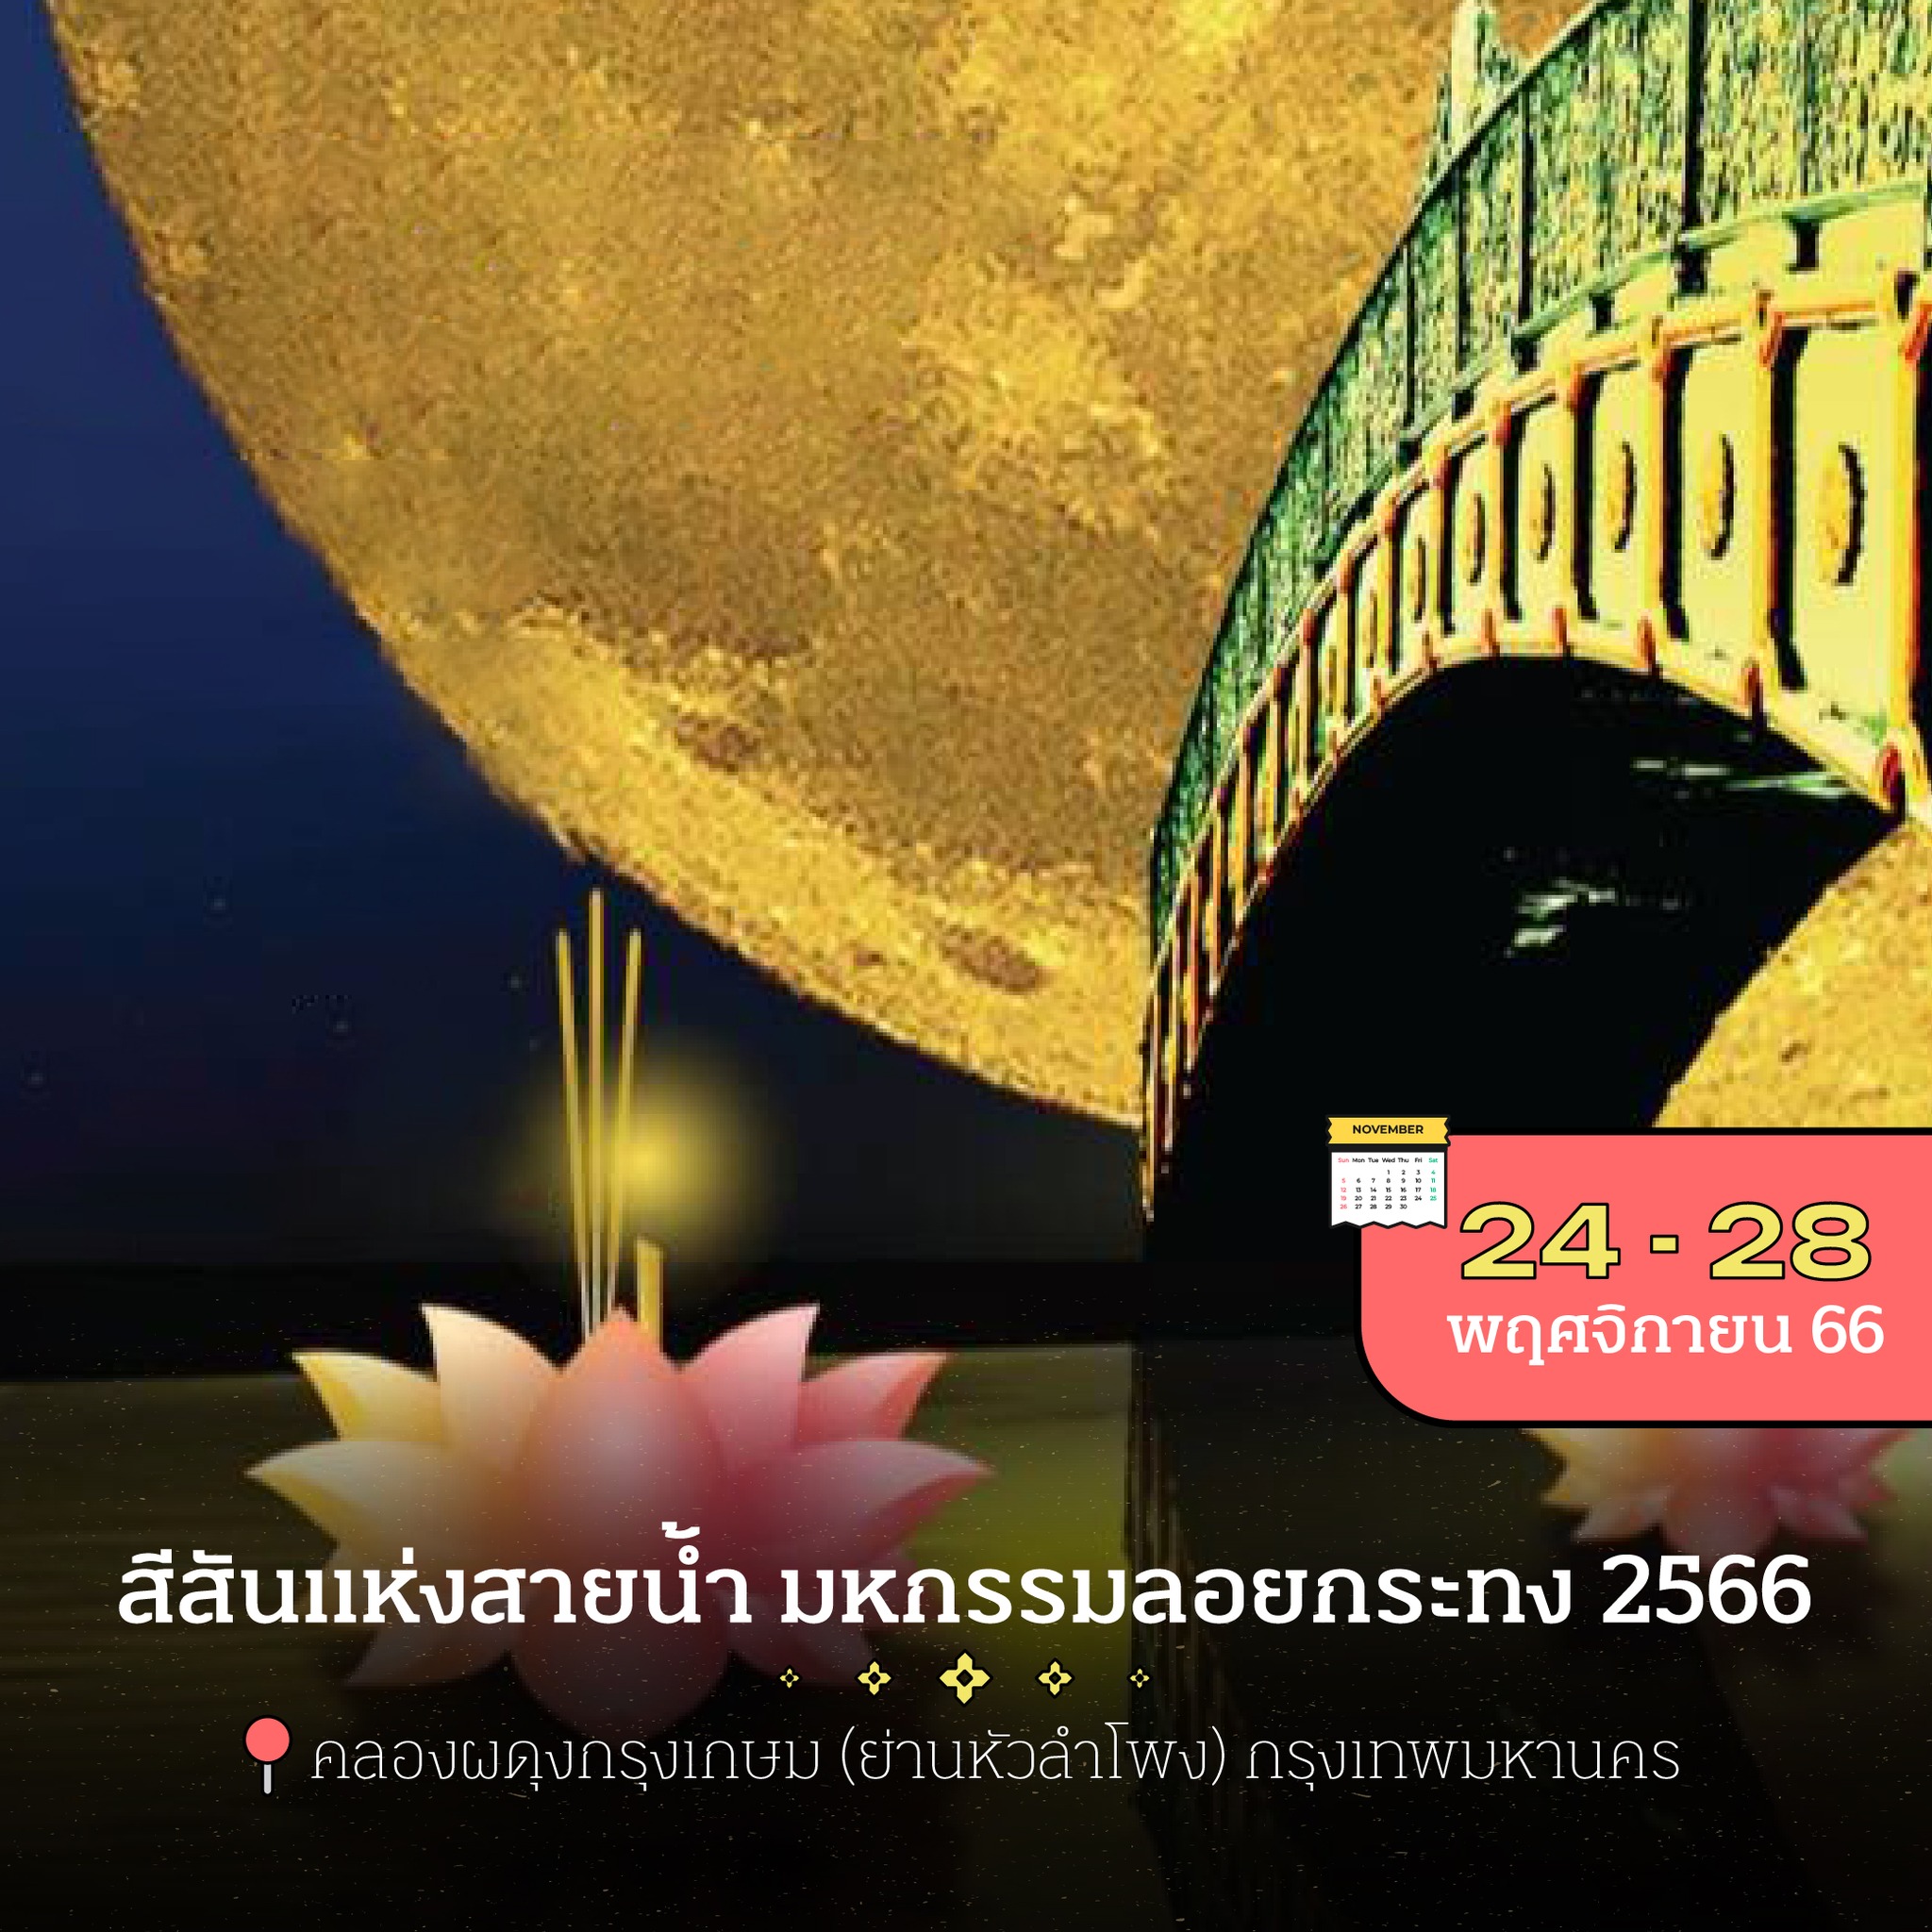 13 พิกัดงานลอยกระทงทั่วไทย 2566